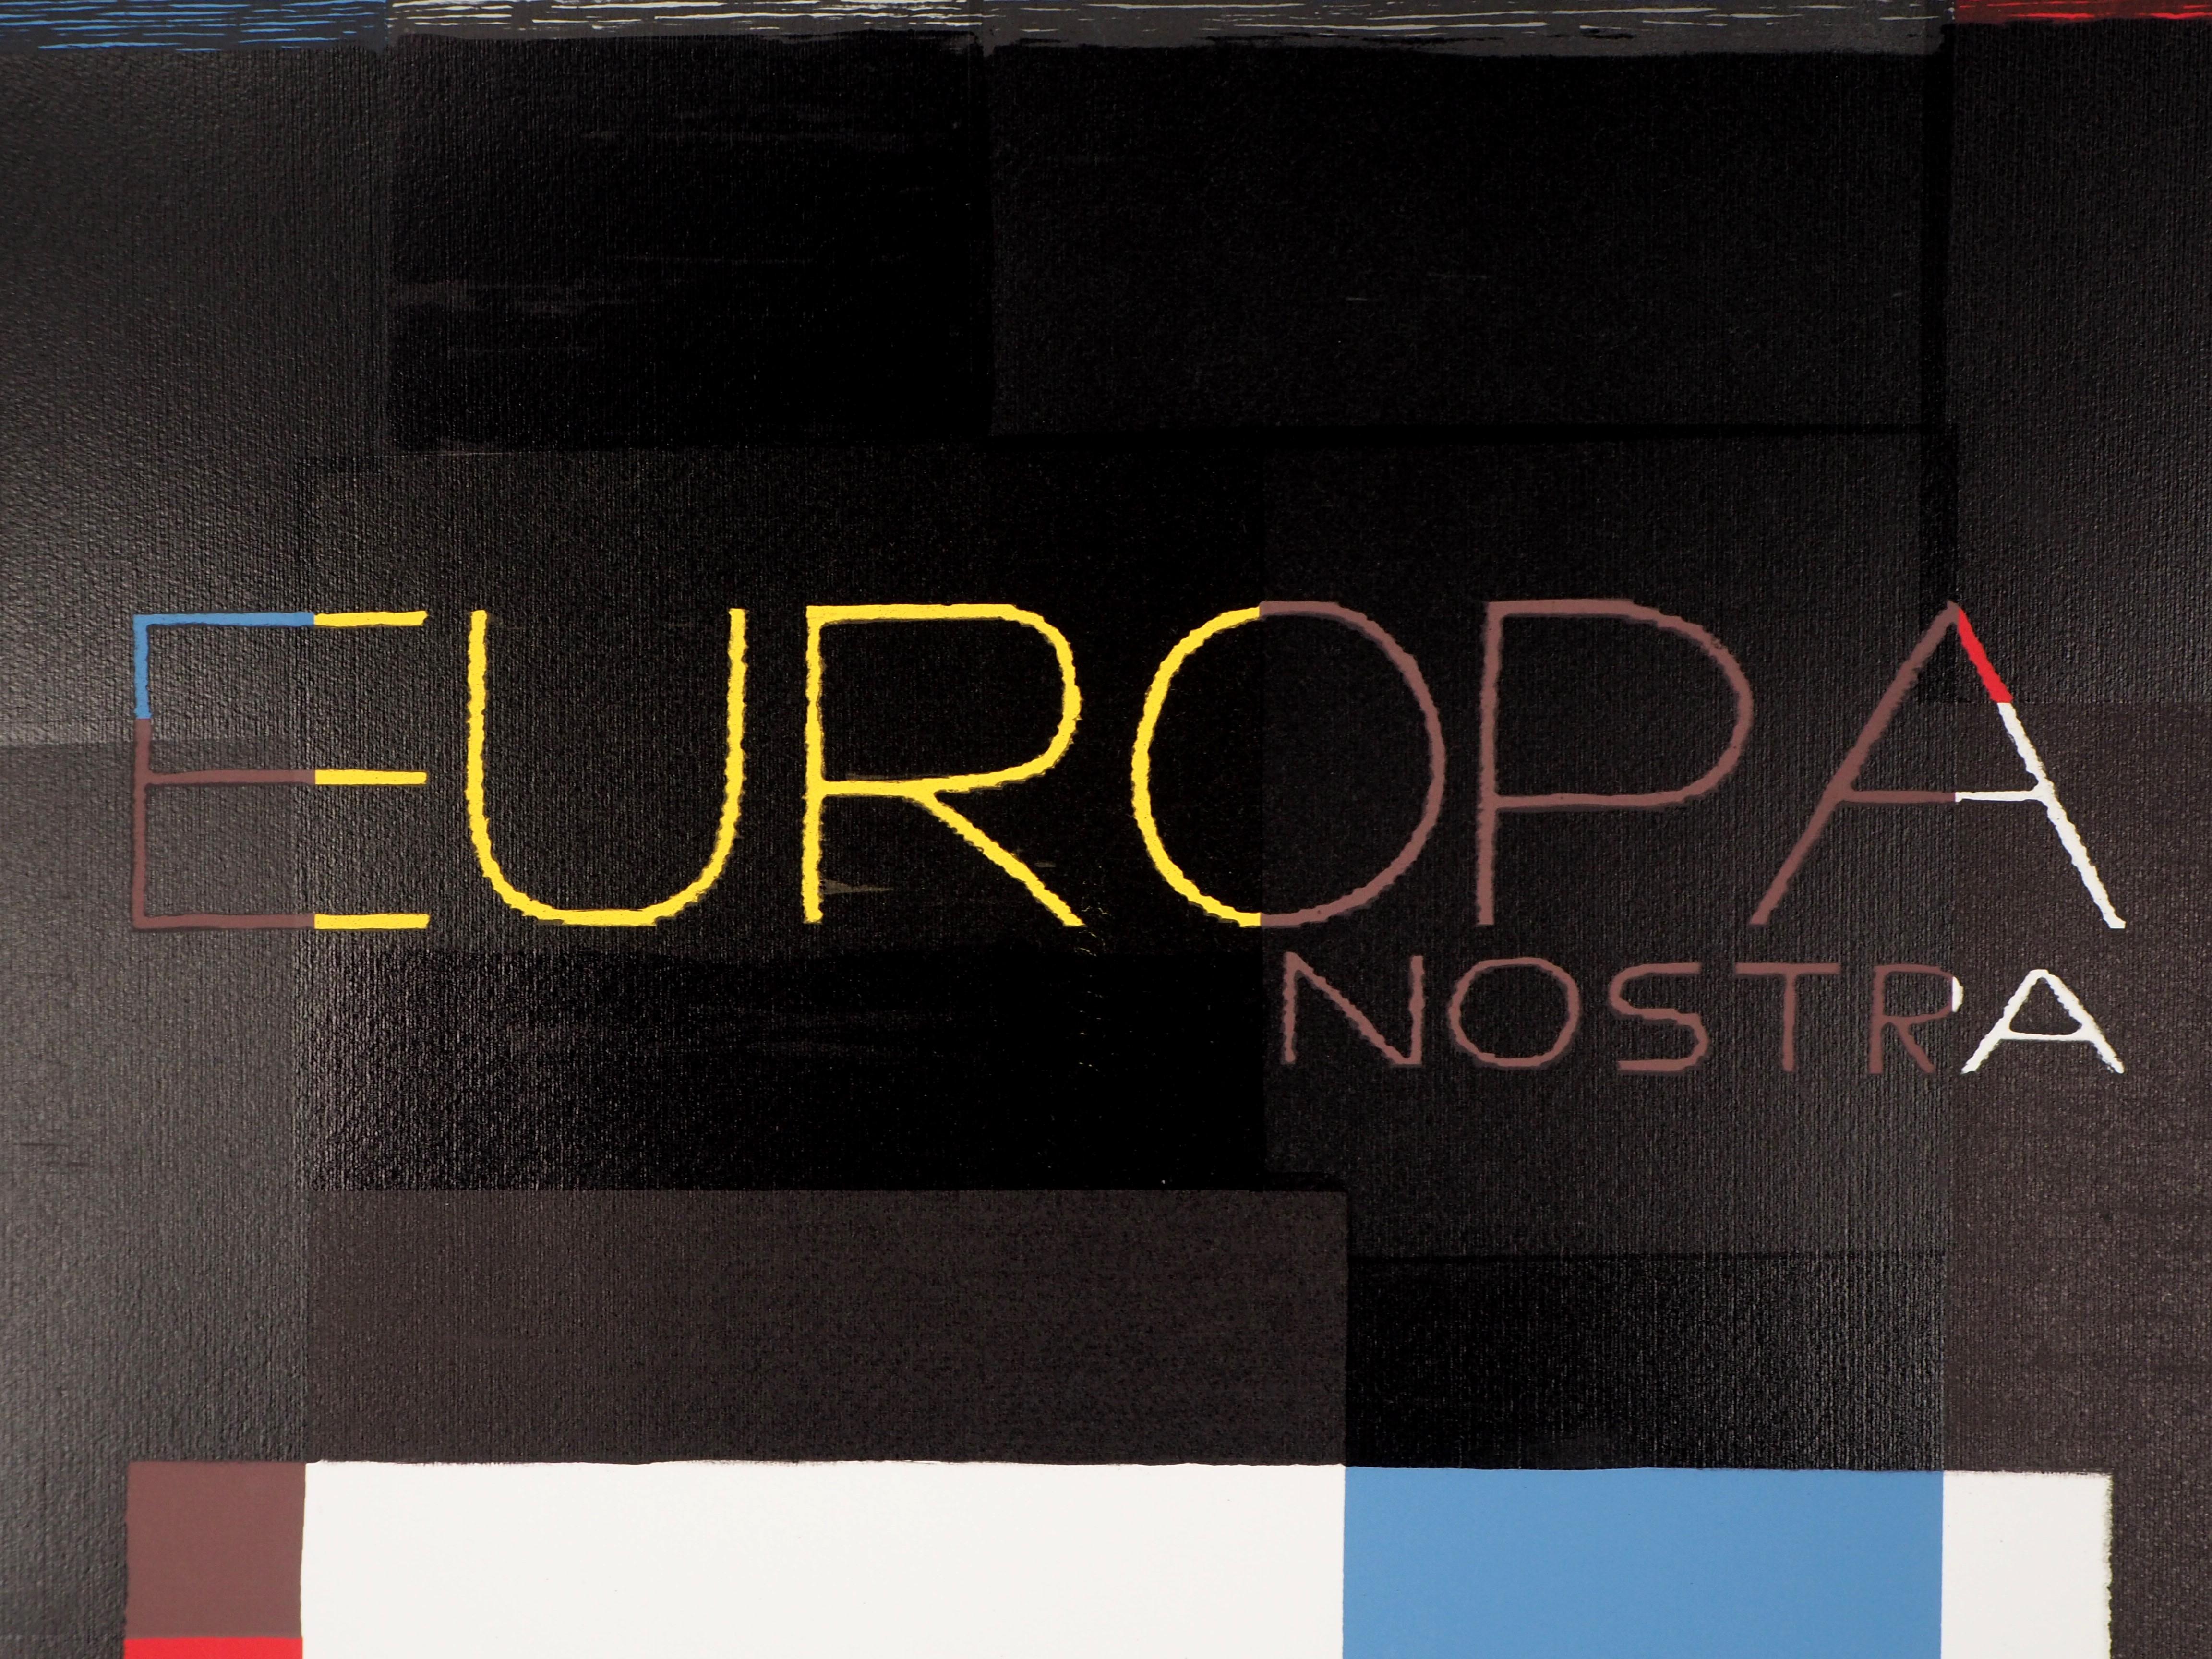 Europa Nostra - Original Siebdruck, handsigniert (Geometrische Abstraktion), Print, von Michel Seuphor